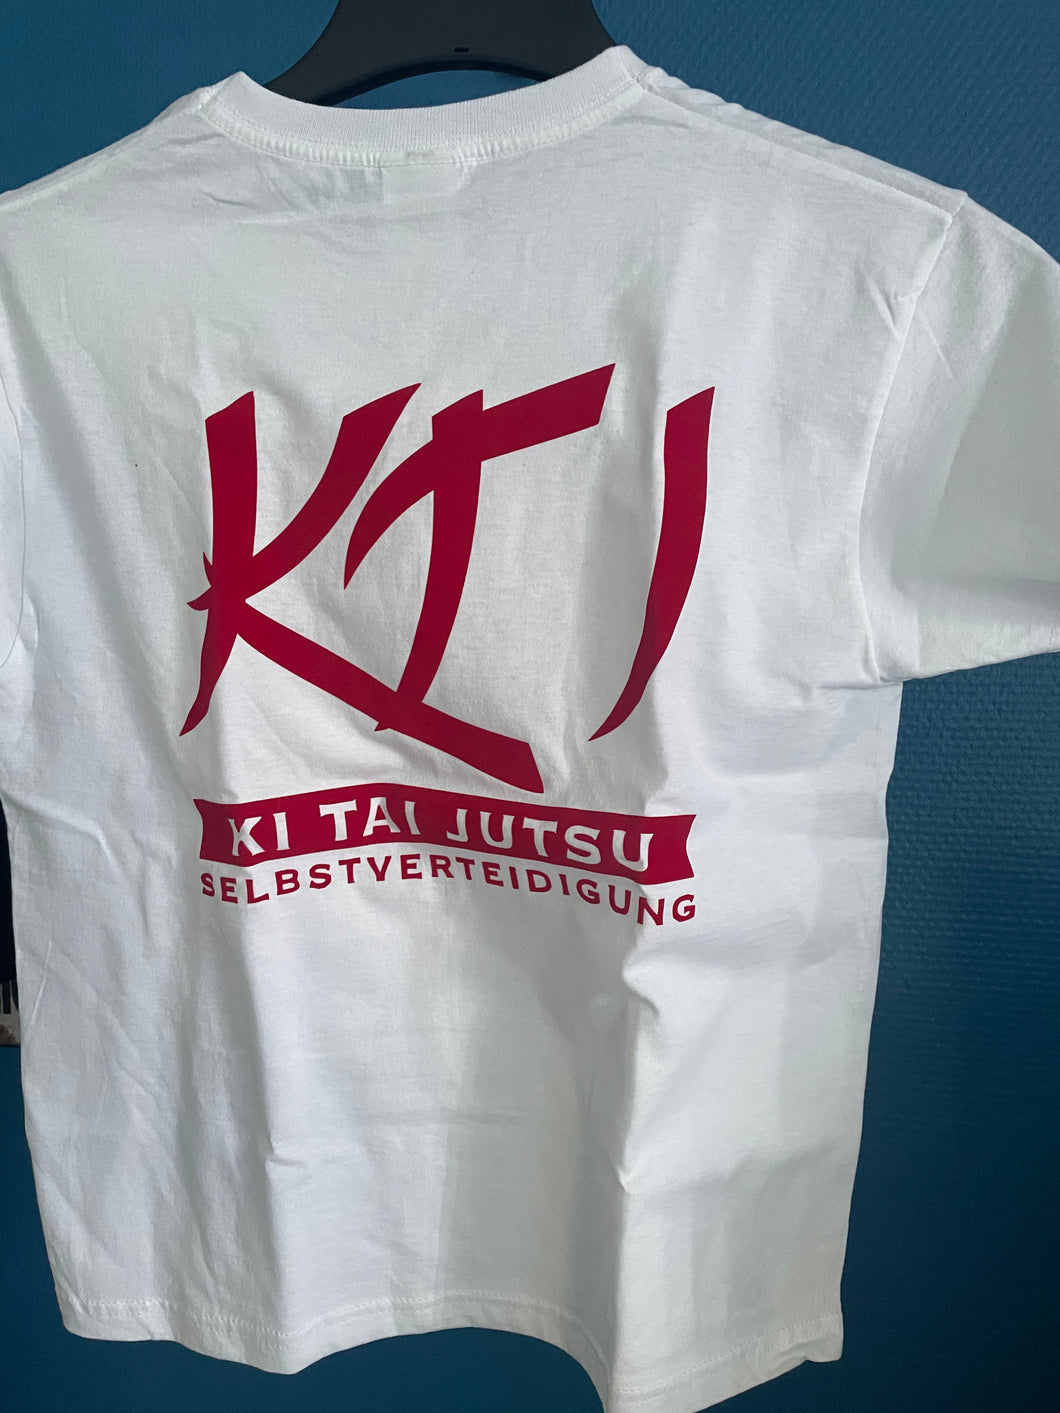 T-Shirt weiß mit rotem KTJ-Rückenaufdruck